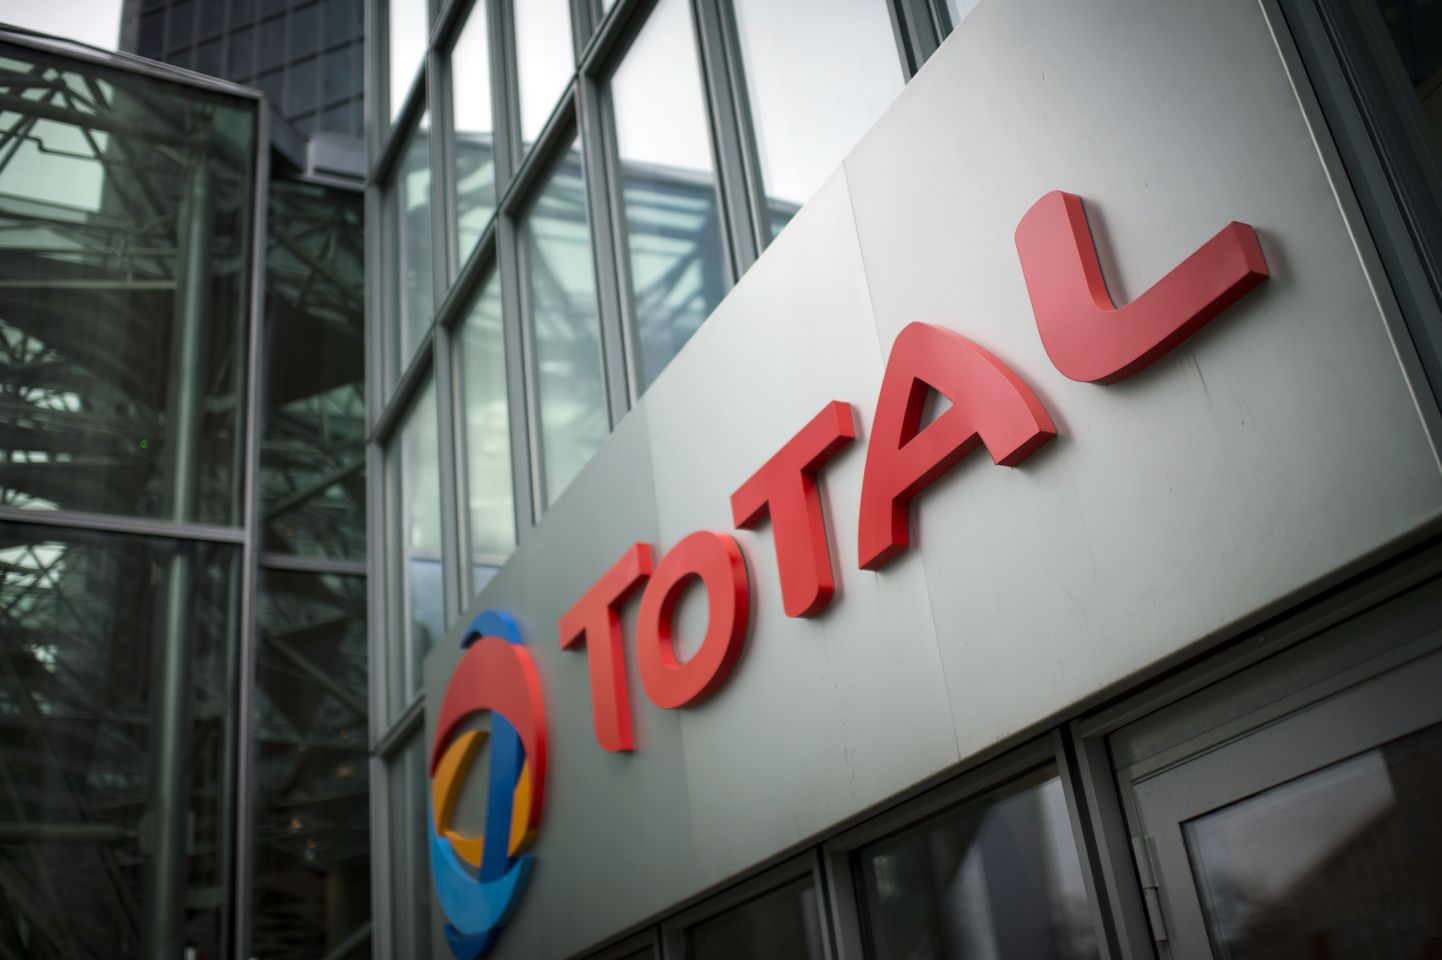 Prantsuse energiafirma Total logo ettevõtte Pariis peakorteri fassaadil.